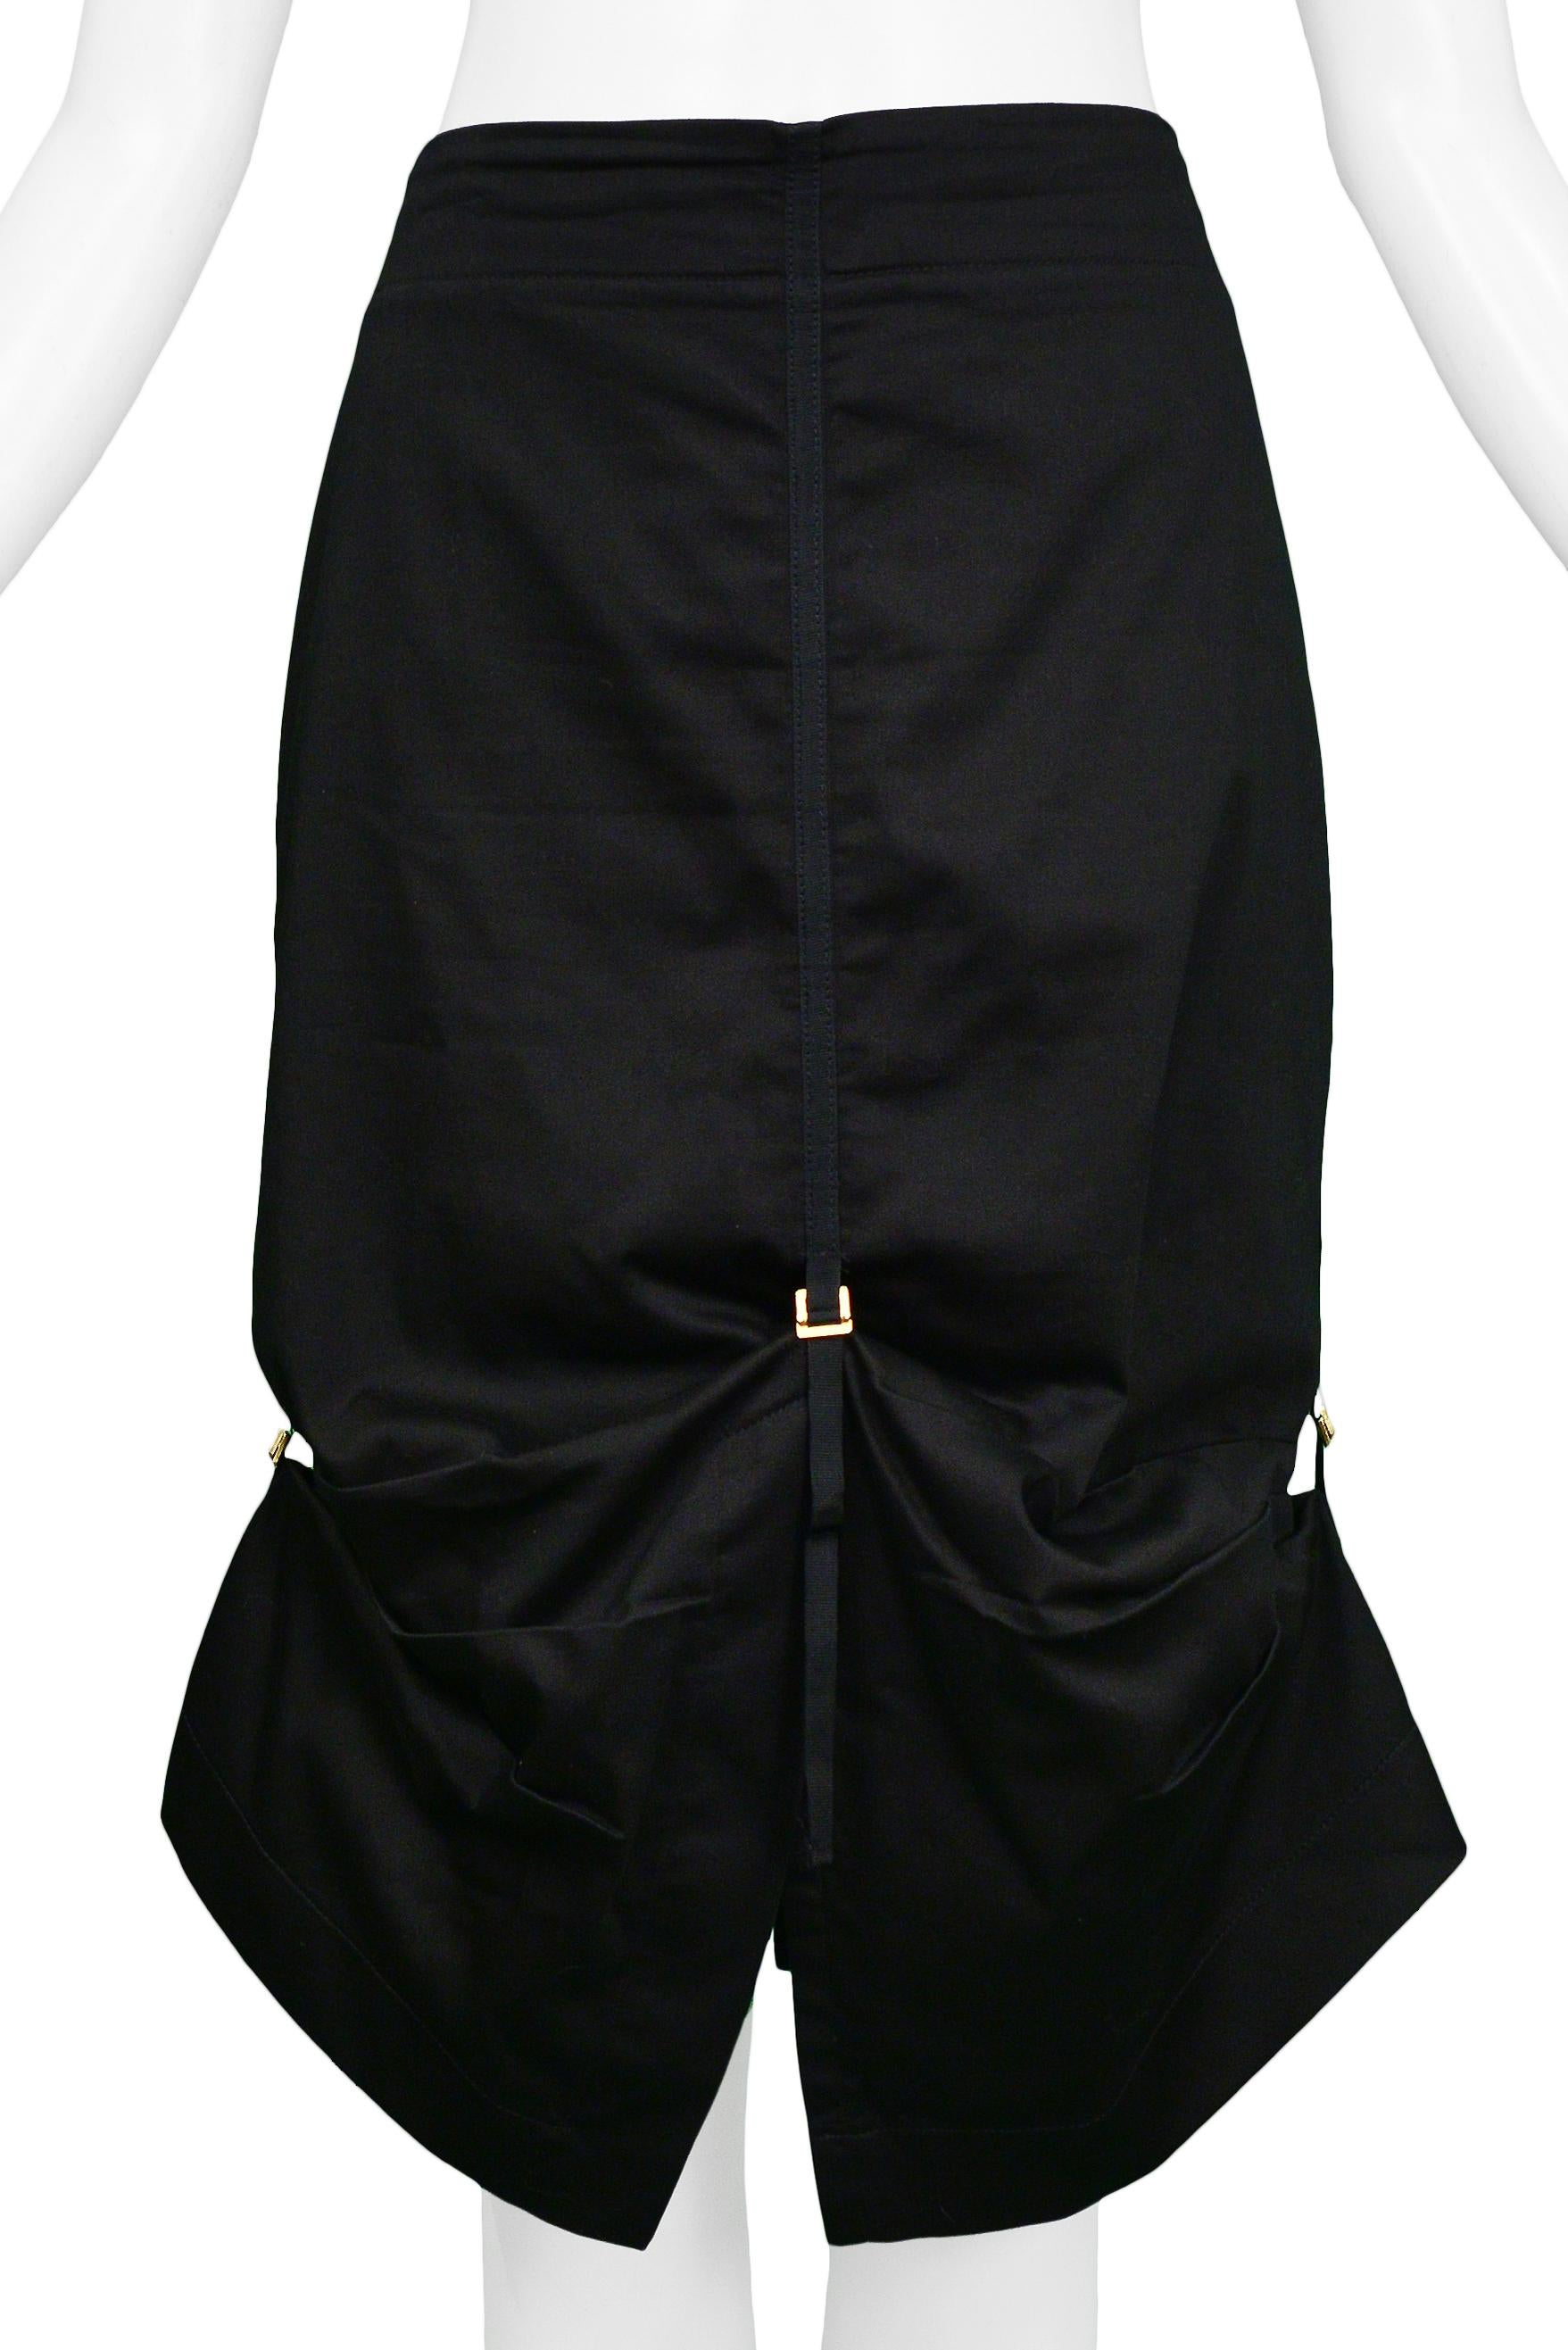 Resurrection Vintage a le plaisir de vous proposer une jupe noire vintage Alexander McQueen avec une taille haute, des bordures noires et des boucles dorées.

Alexander McQueen Label
Taille petite
Mesures : Taille 28